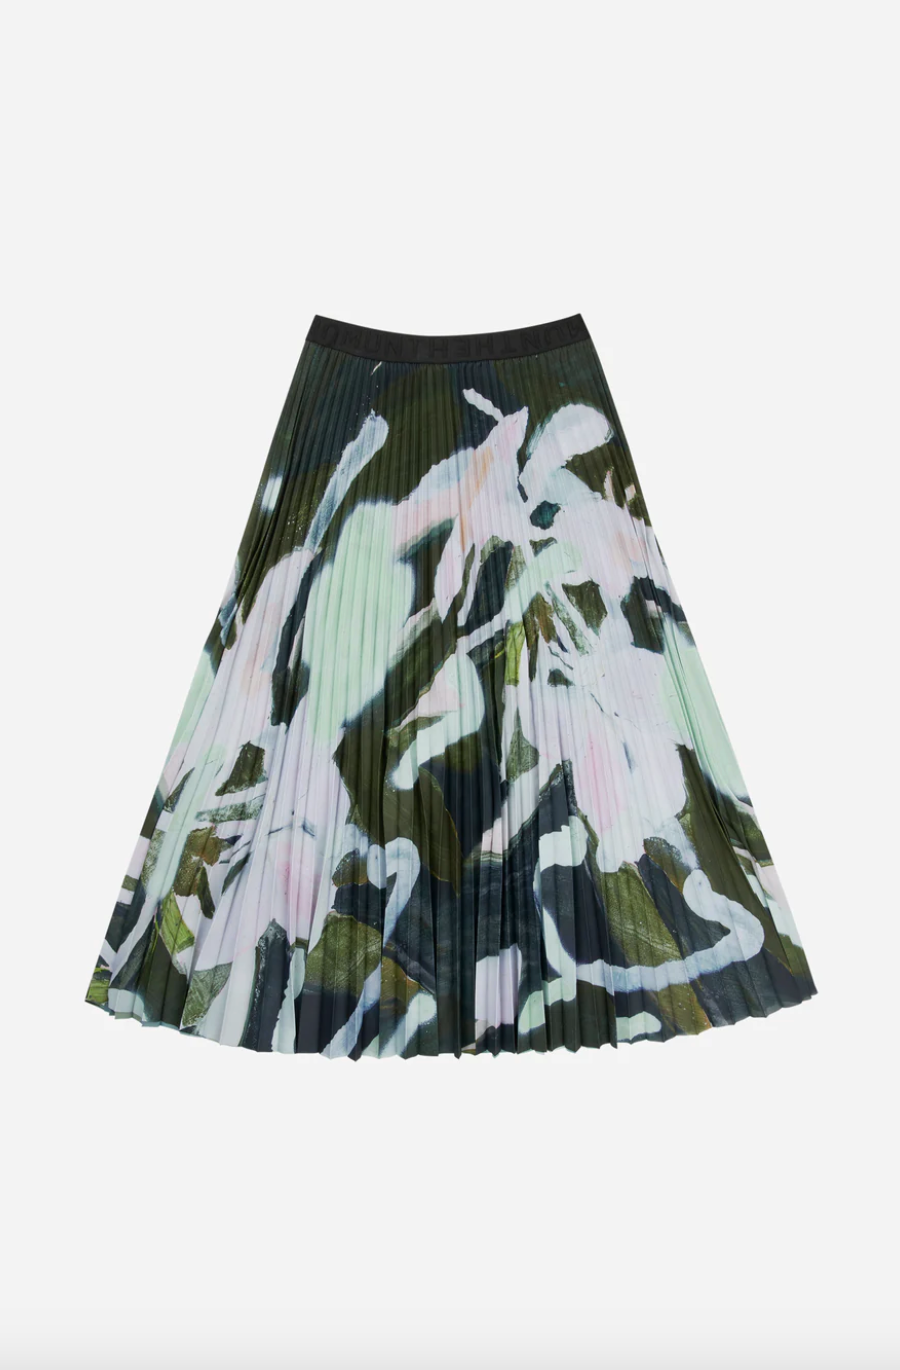 Charming Skirt